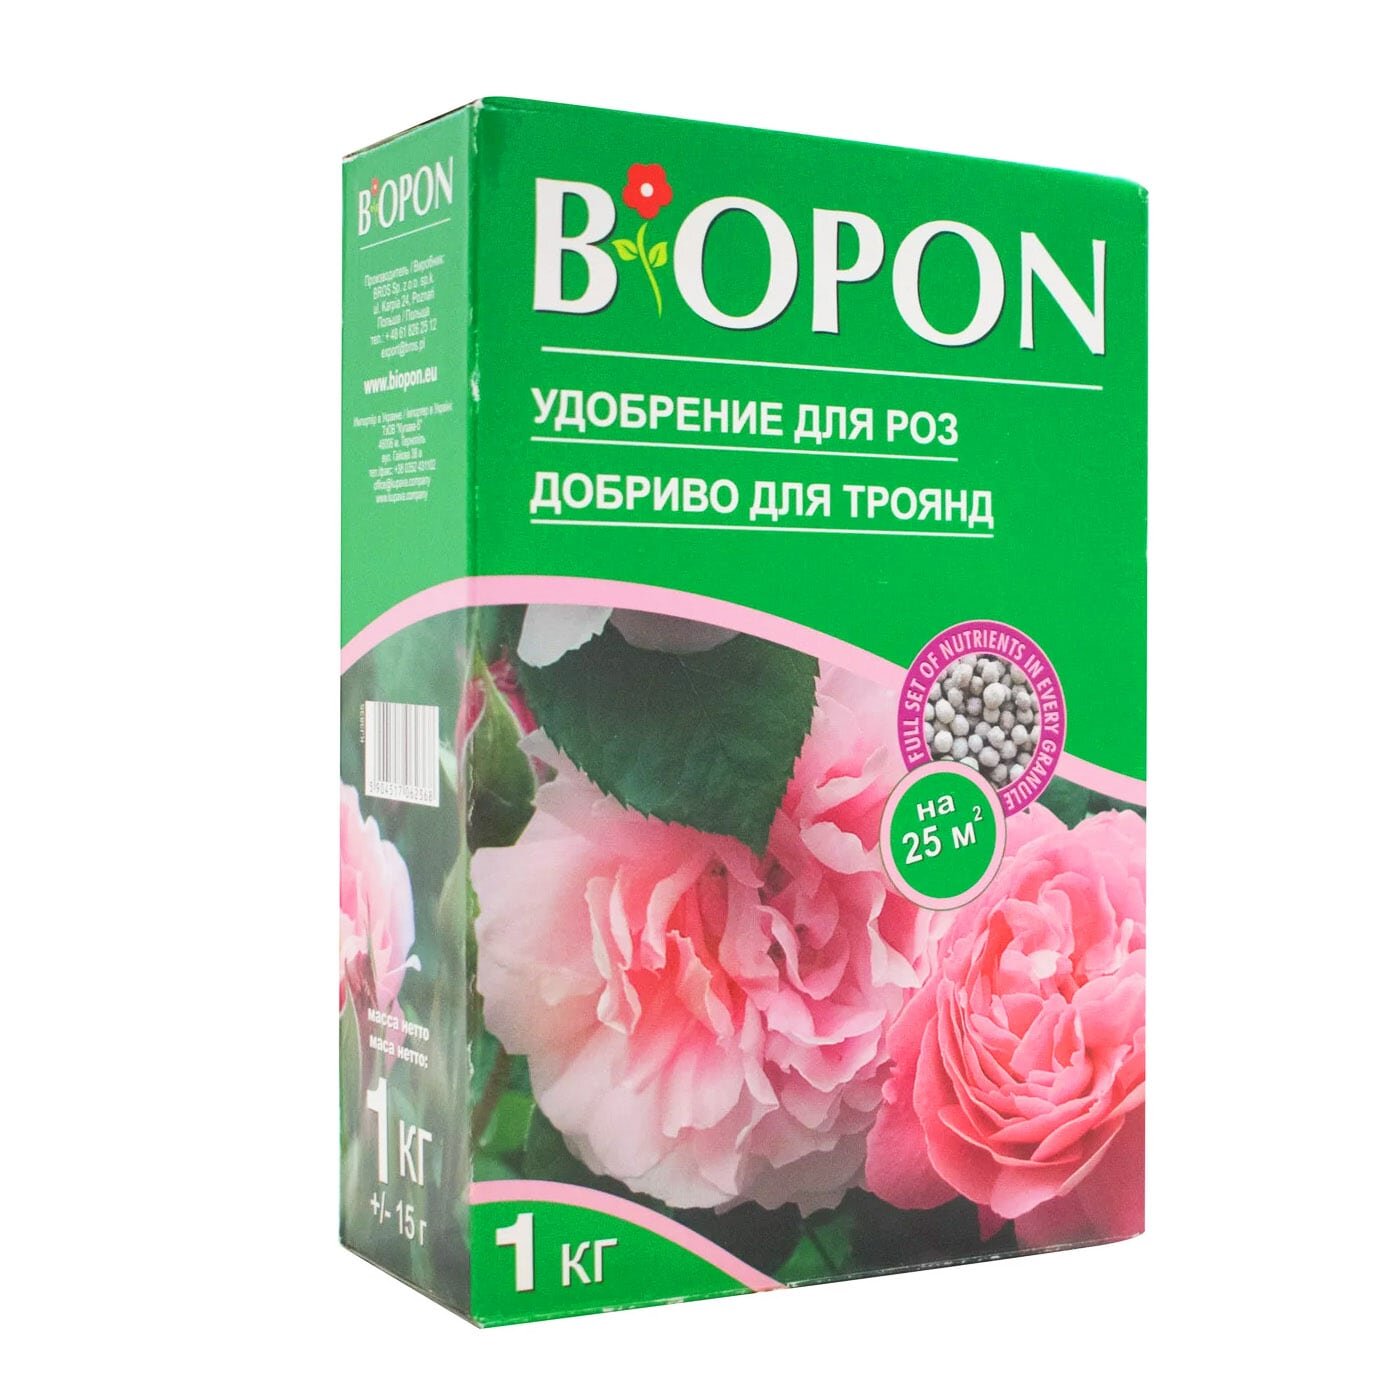 Минеральное Удобрение для роз ТМ "BIOPON" 1кг